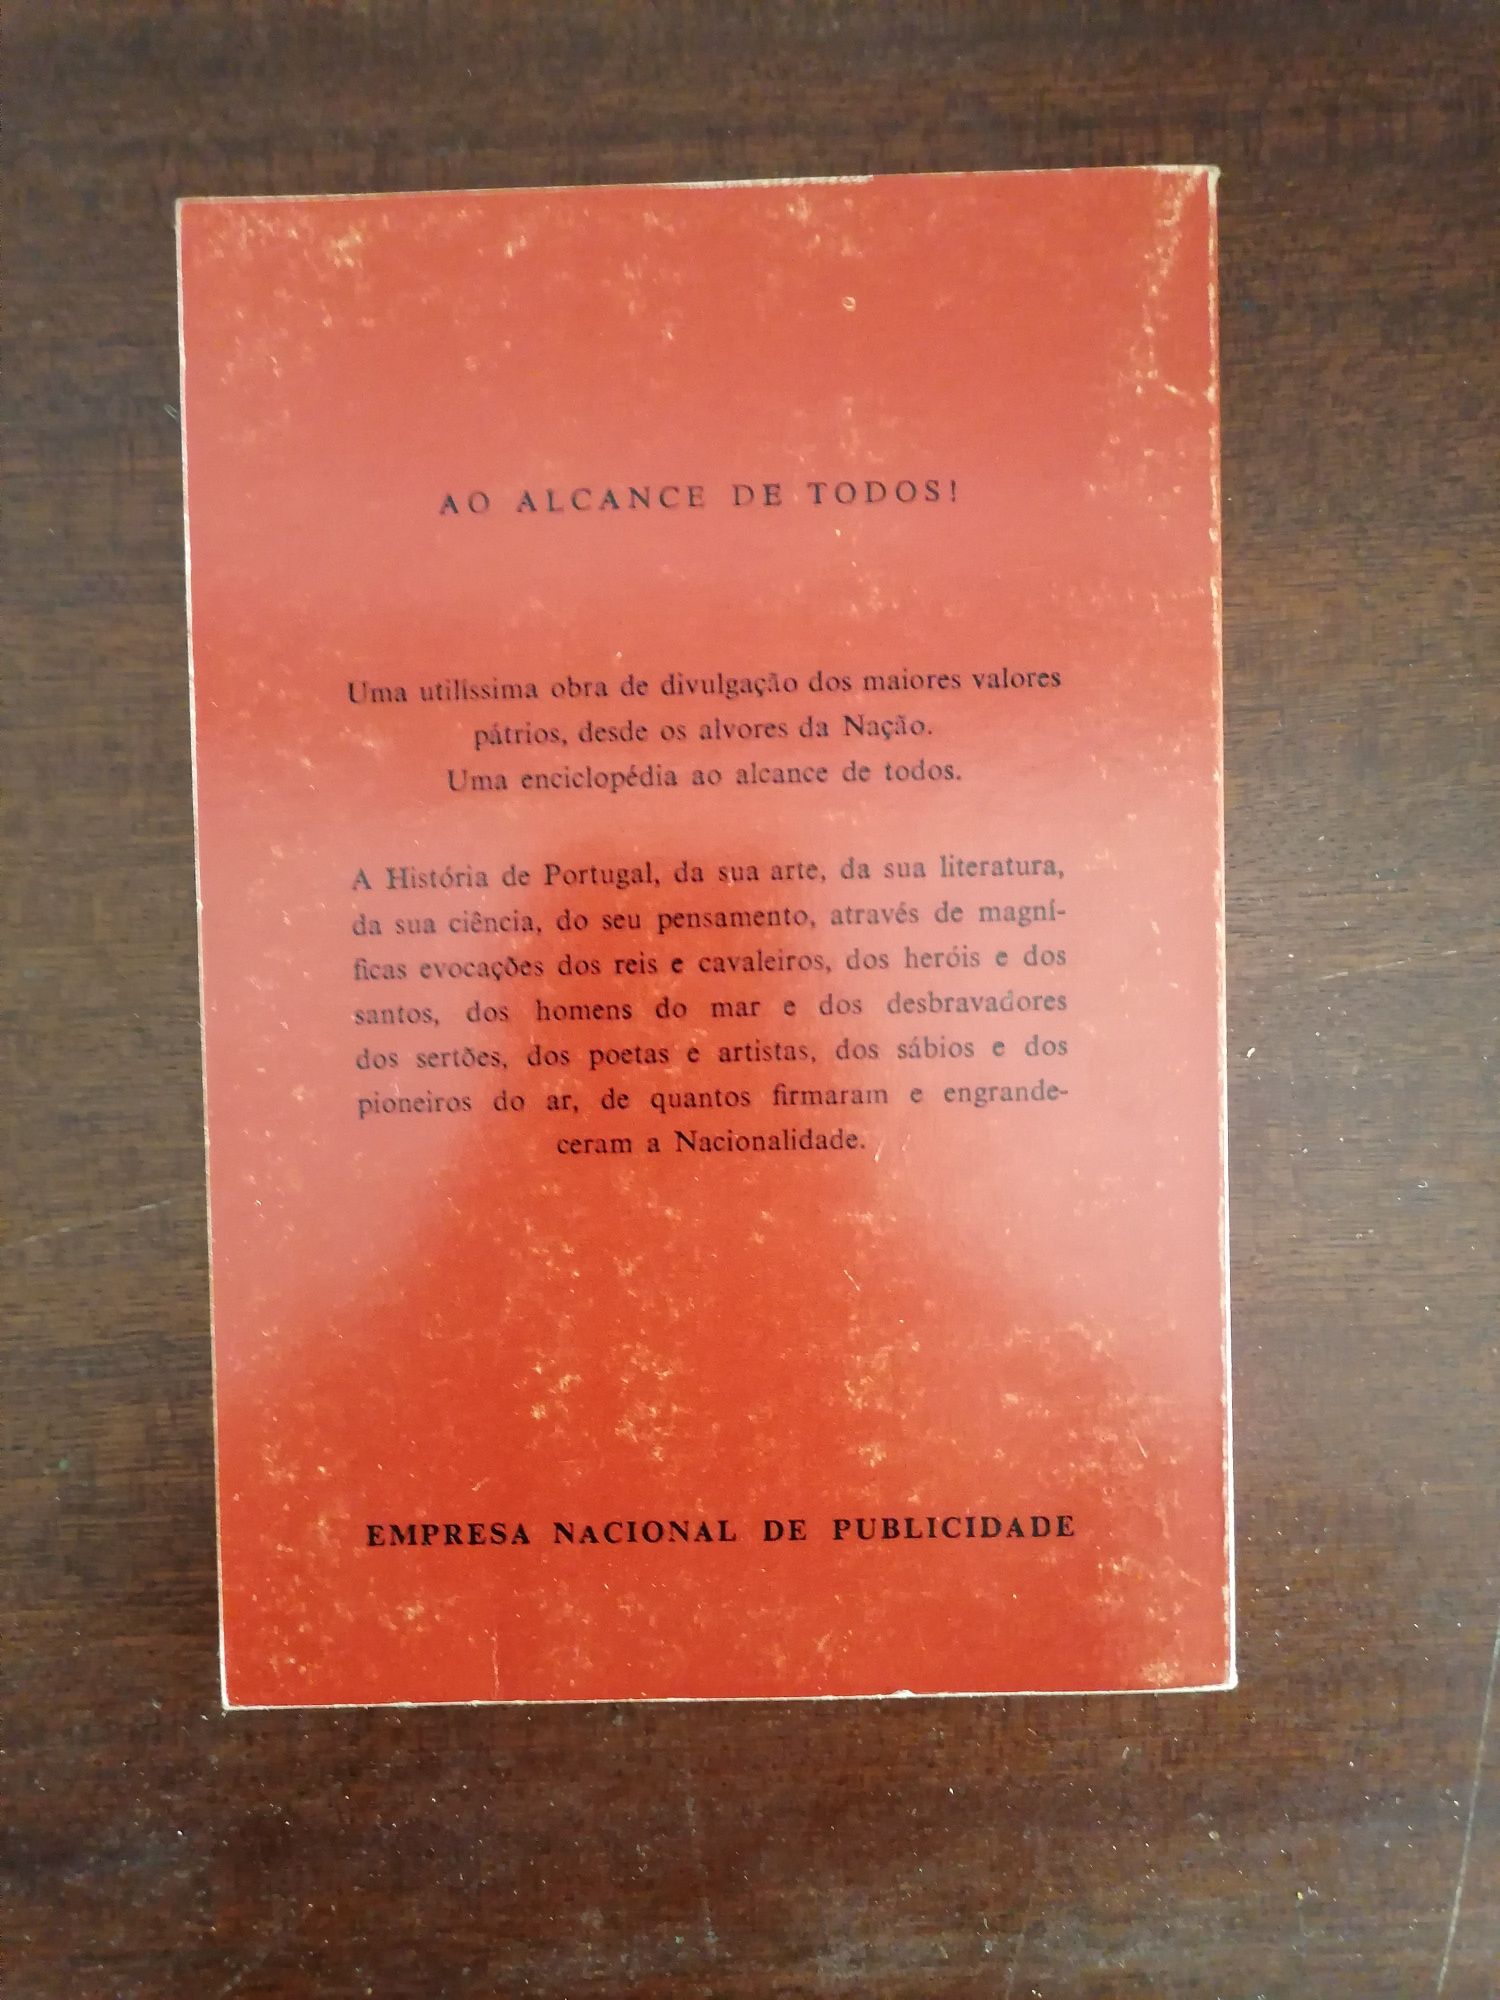 Livro "CULTURA PORTUGUESA", de Hernâni Cidade e Ruy D'Abreu Torres